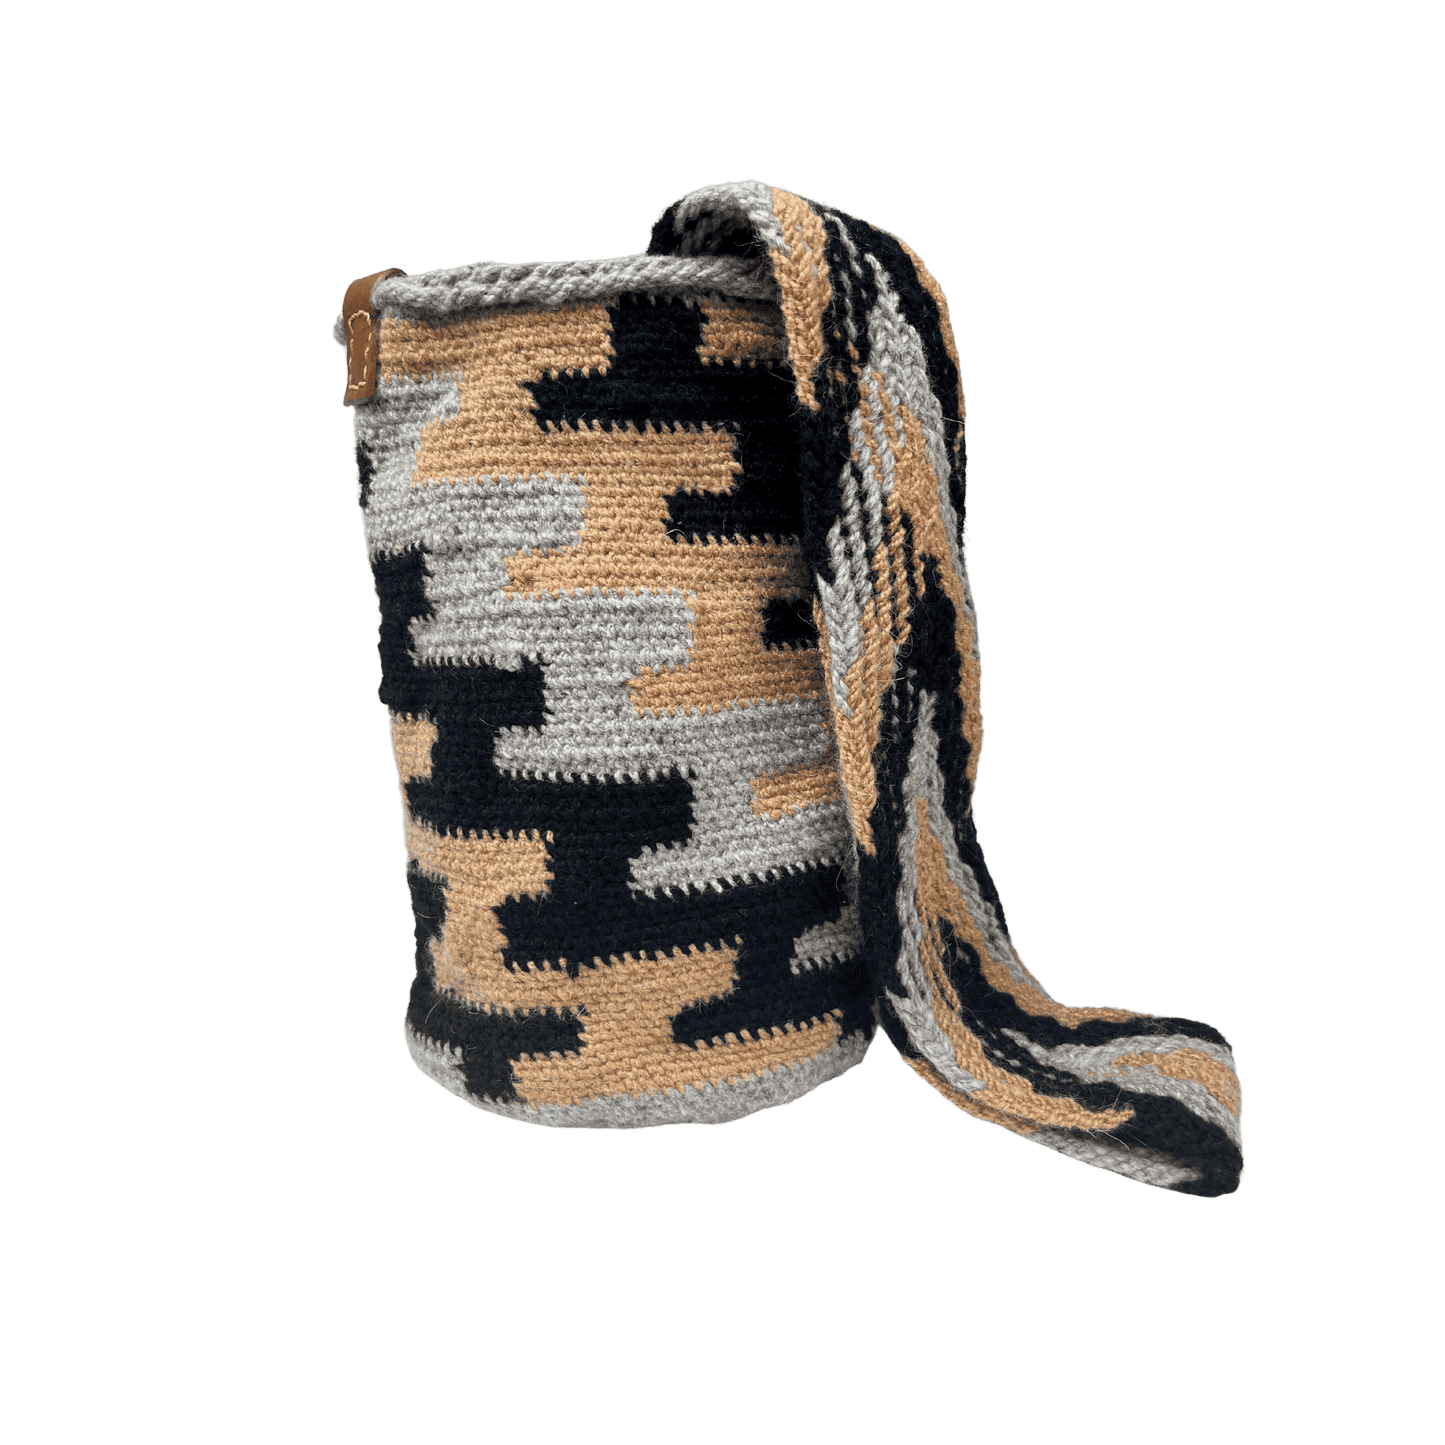 Mochila arhuaca  artesanal pequeña tejida a mano con diseño de colores cafe claro, negro y gris